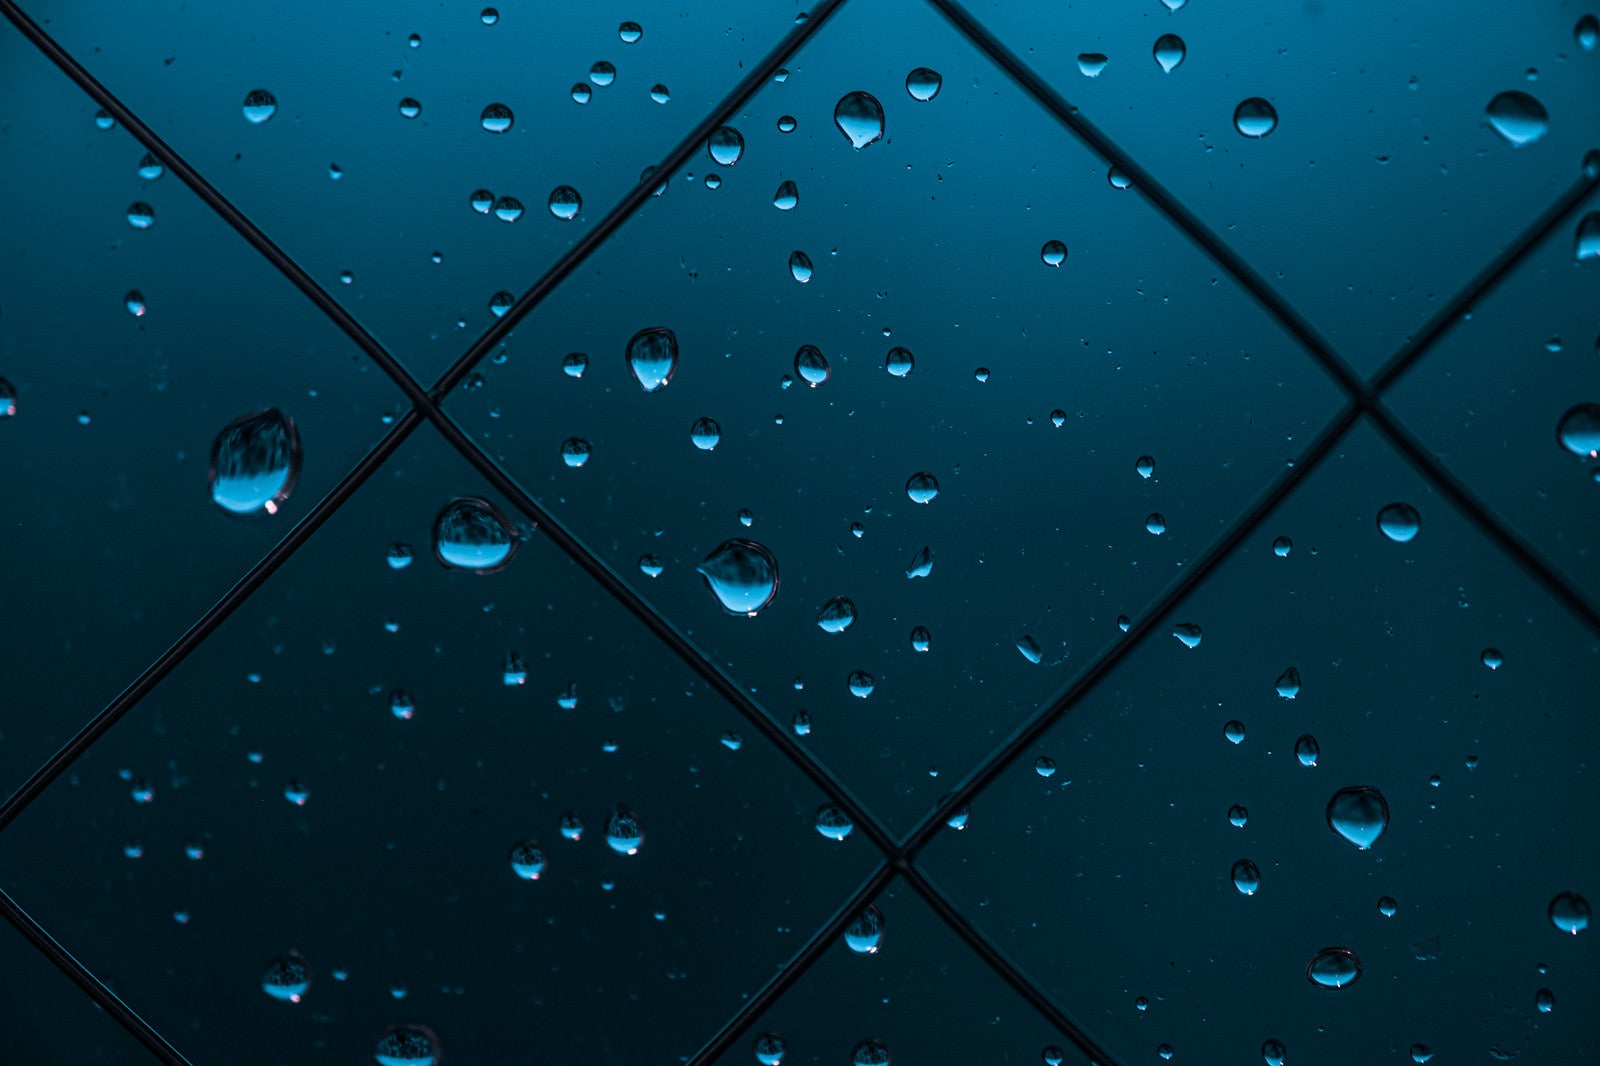 「窓と雨の水滴」の写真